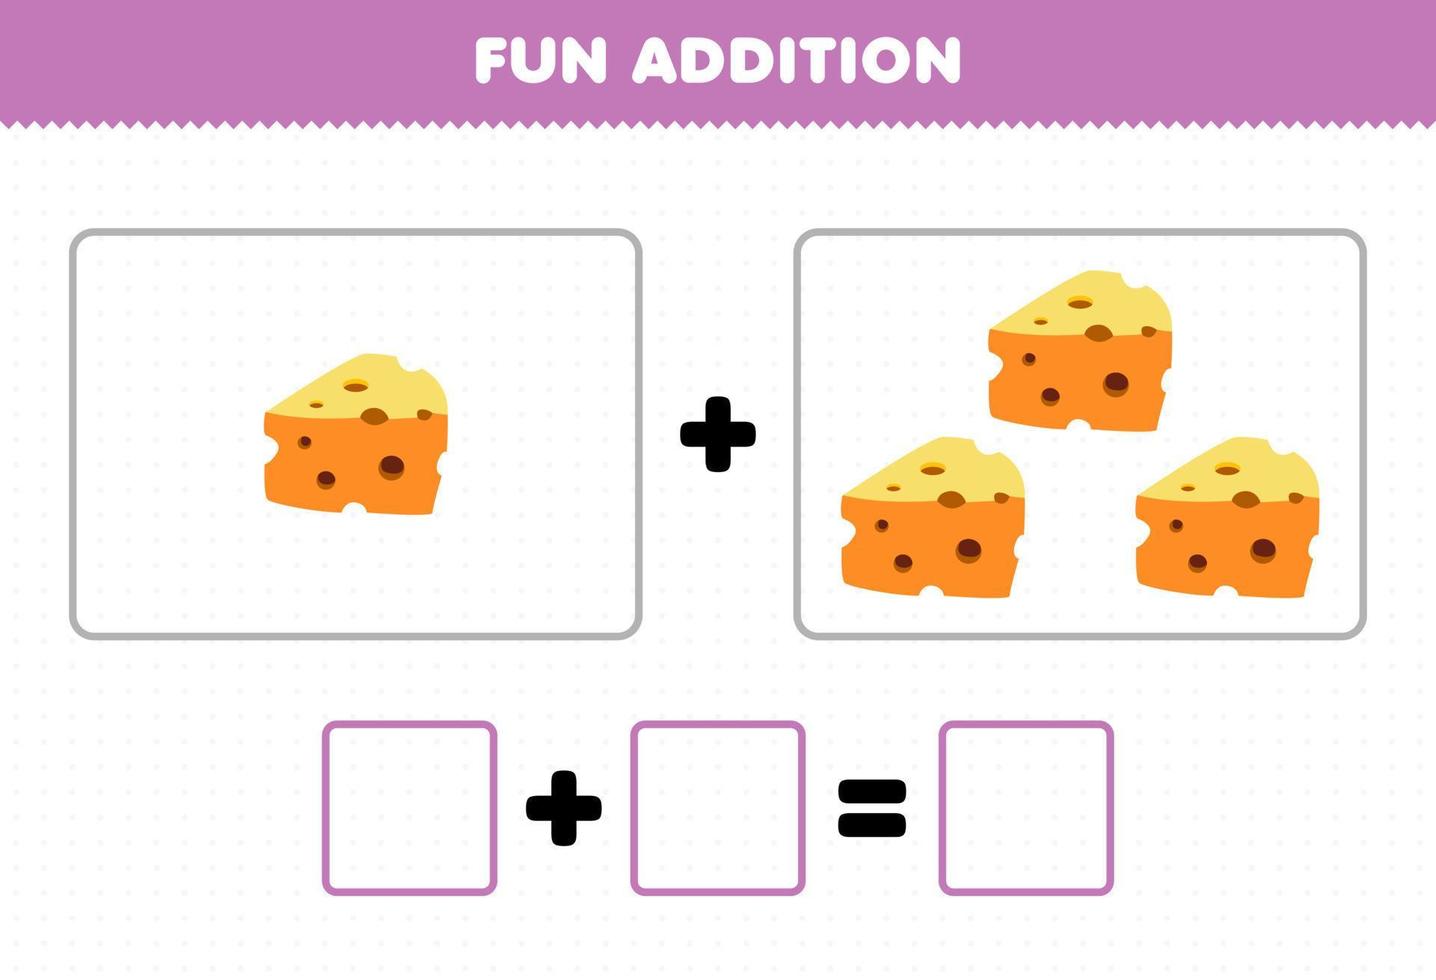 jeu éducatif pour les enfants addition amusante en comptant la feuille de calcul des images de fromage de nourriture de dessin animé vecteur